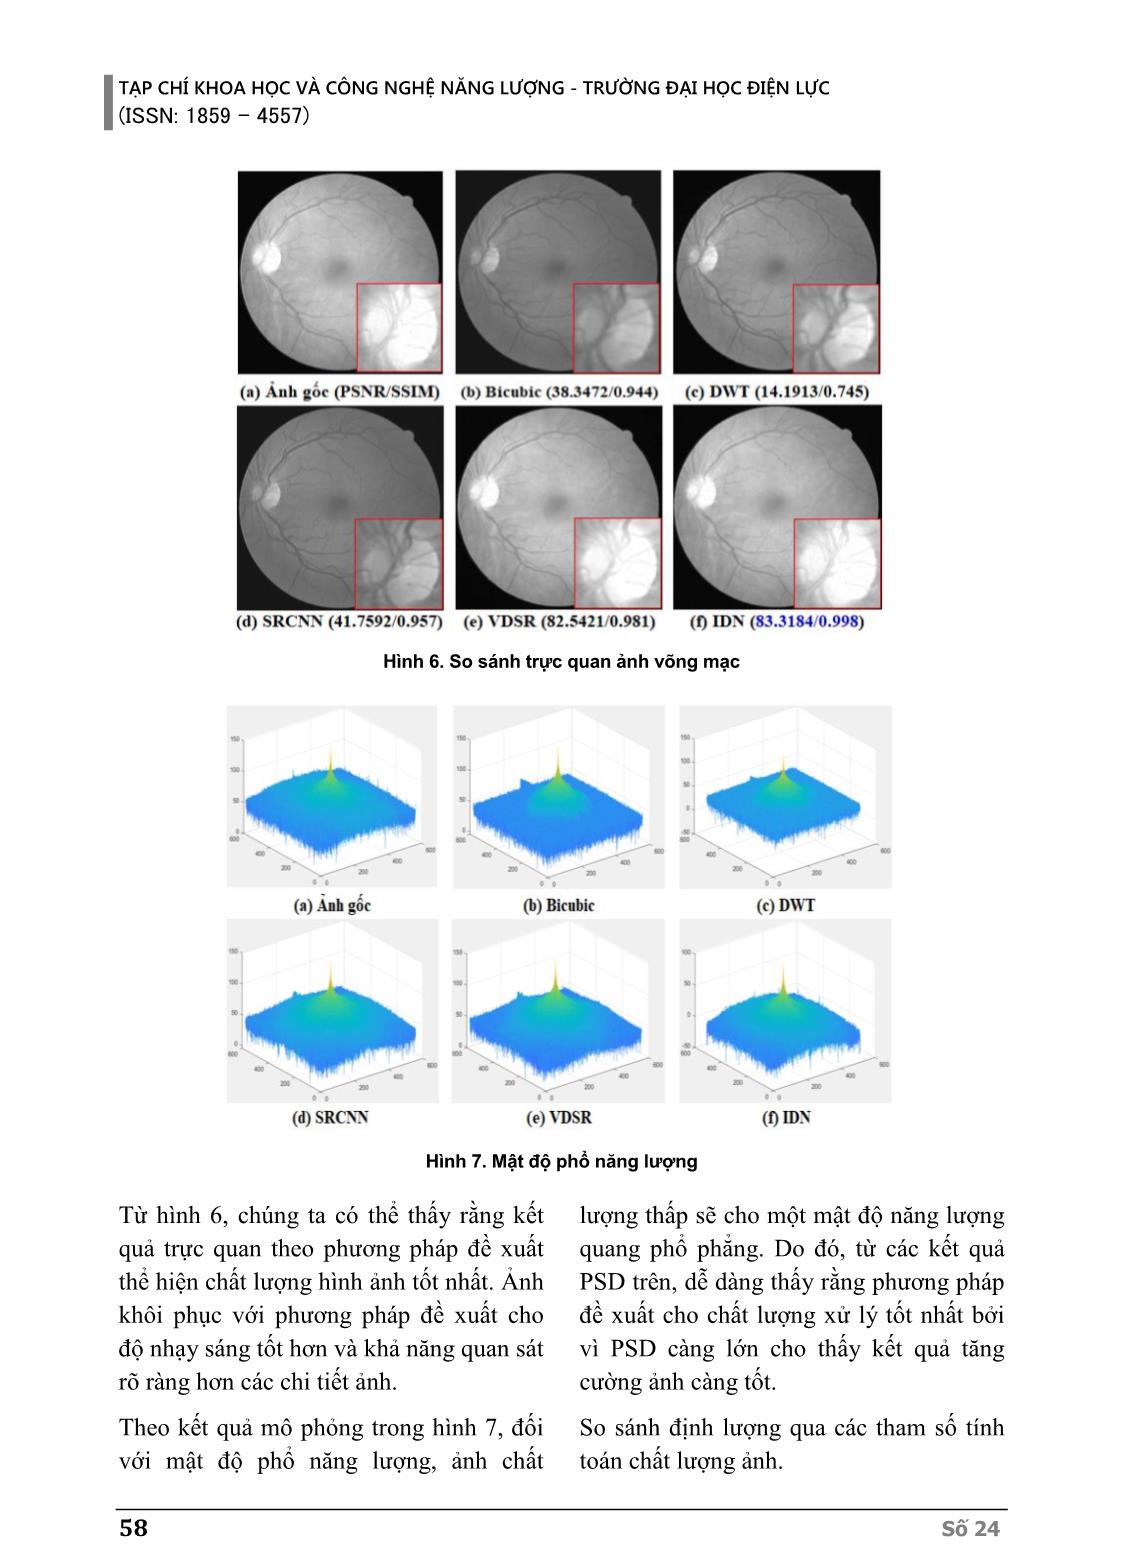 Siêu phân giải dùng trí tuệ nhân tạo nâng cao chất lượng ảnh võng mạc mắt người trang 9